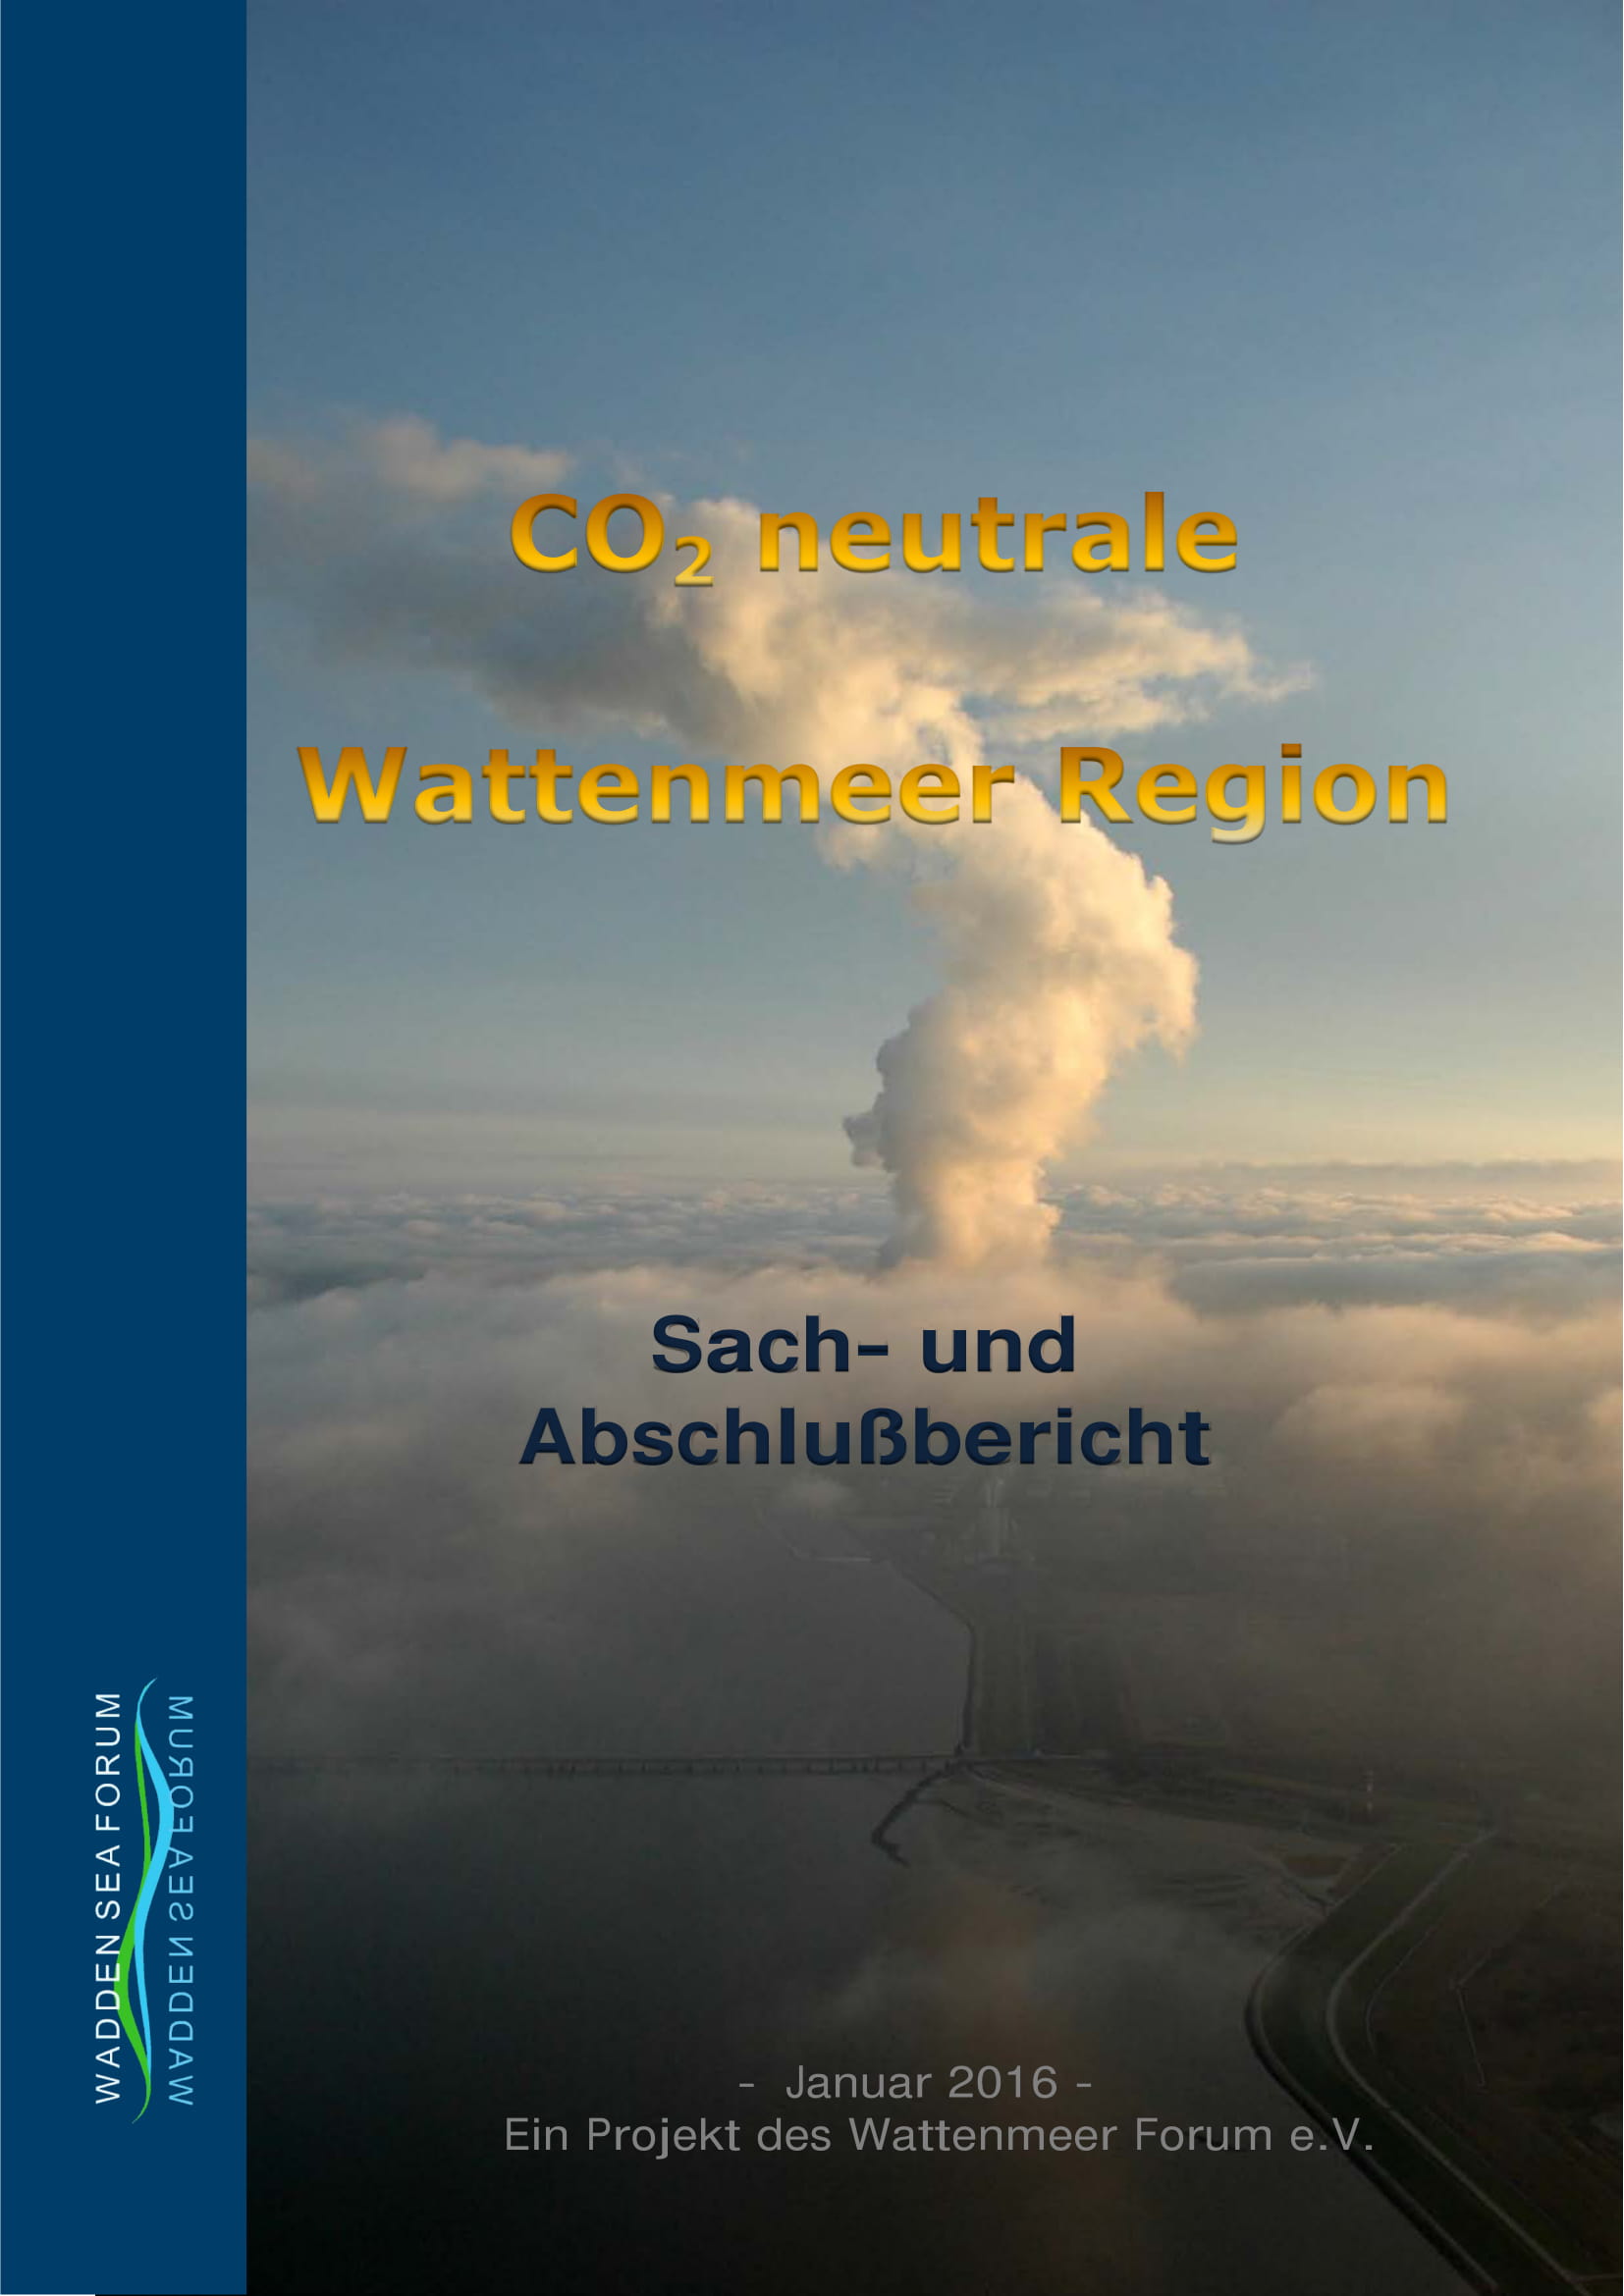 WSF projekt CO2 neutrale Wattenmeer Region 2013-2015